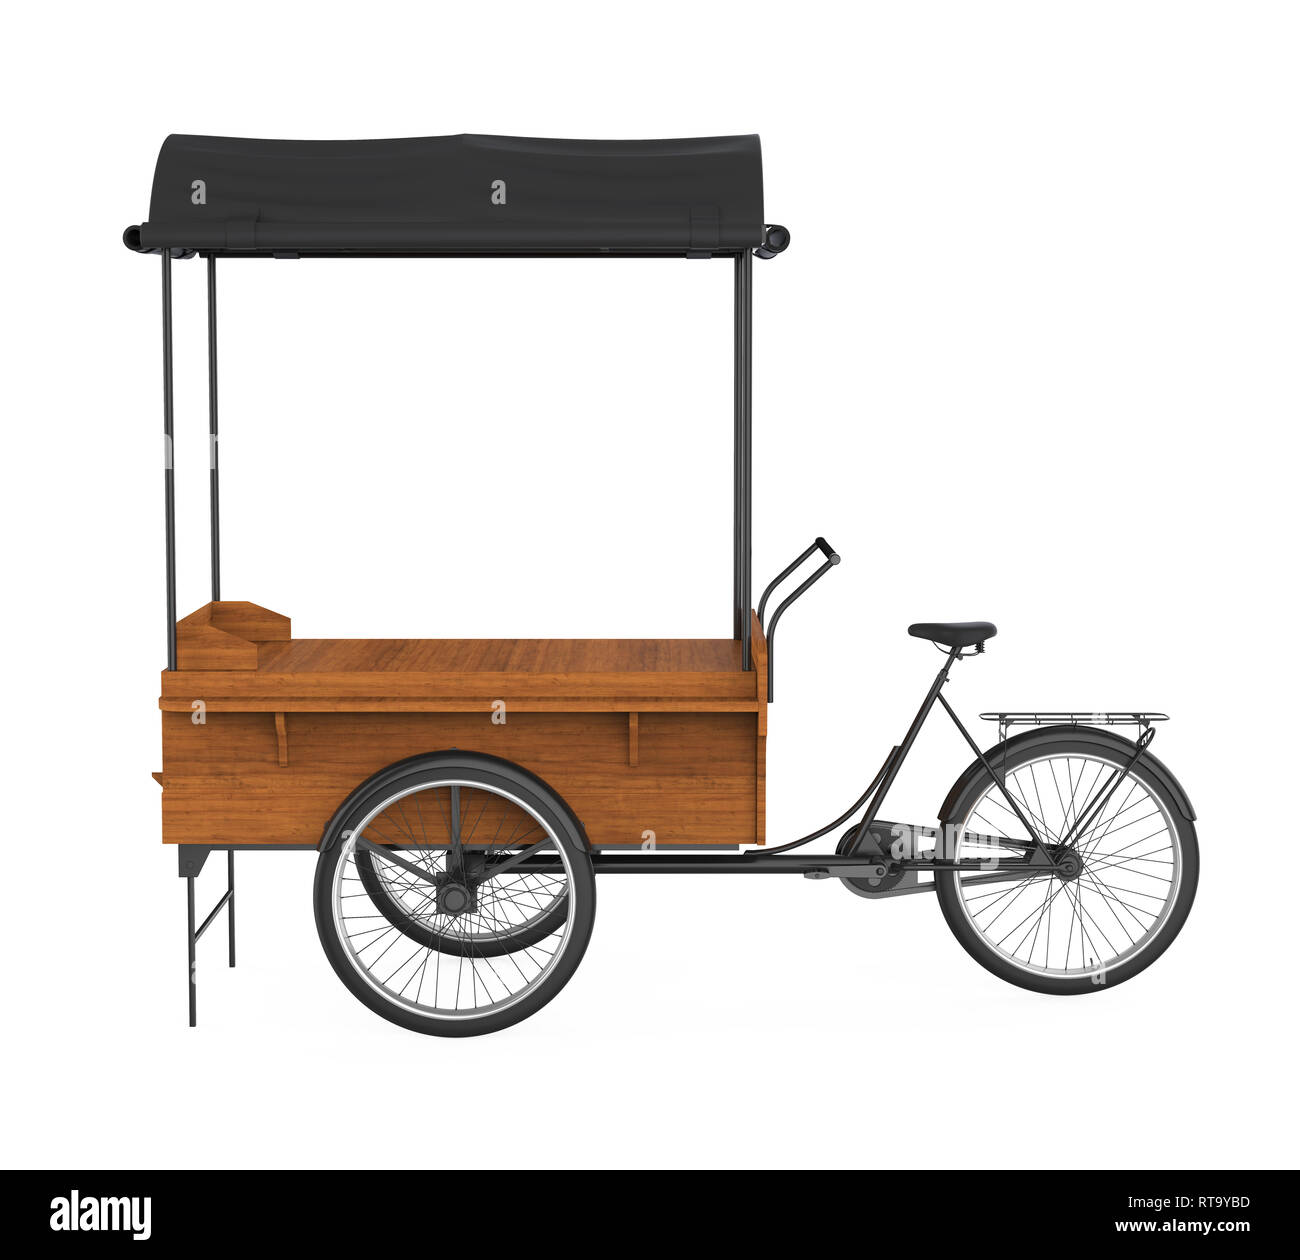 https://c8.alamy.com/comp/RT9YBD/bike-food-cart-isolated-RT9YBD.jpg